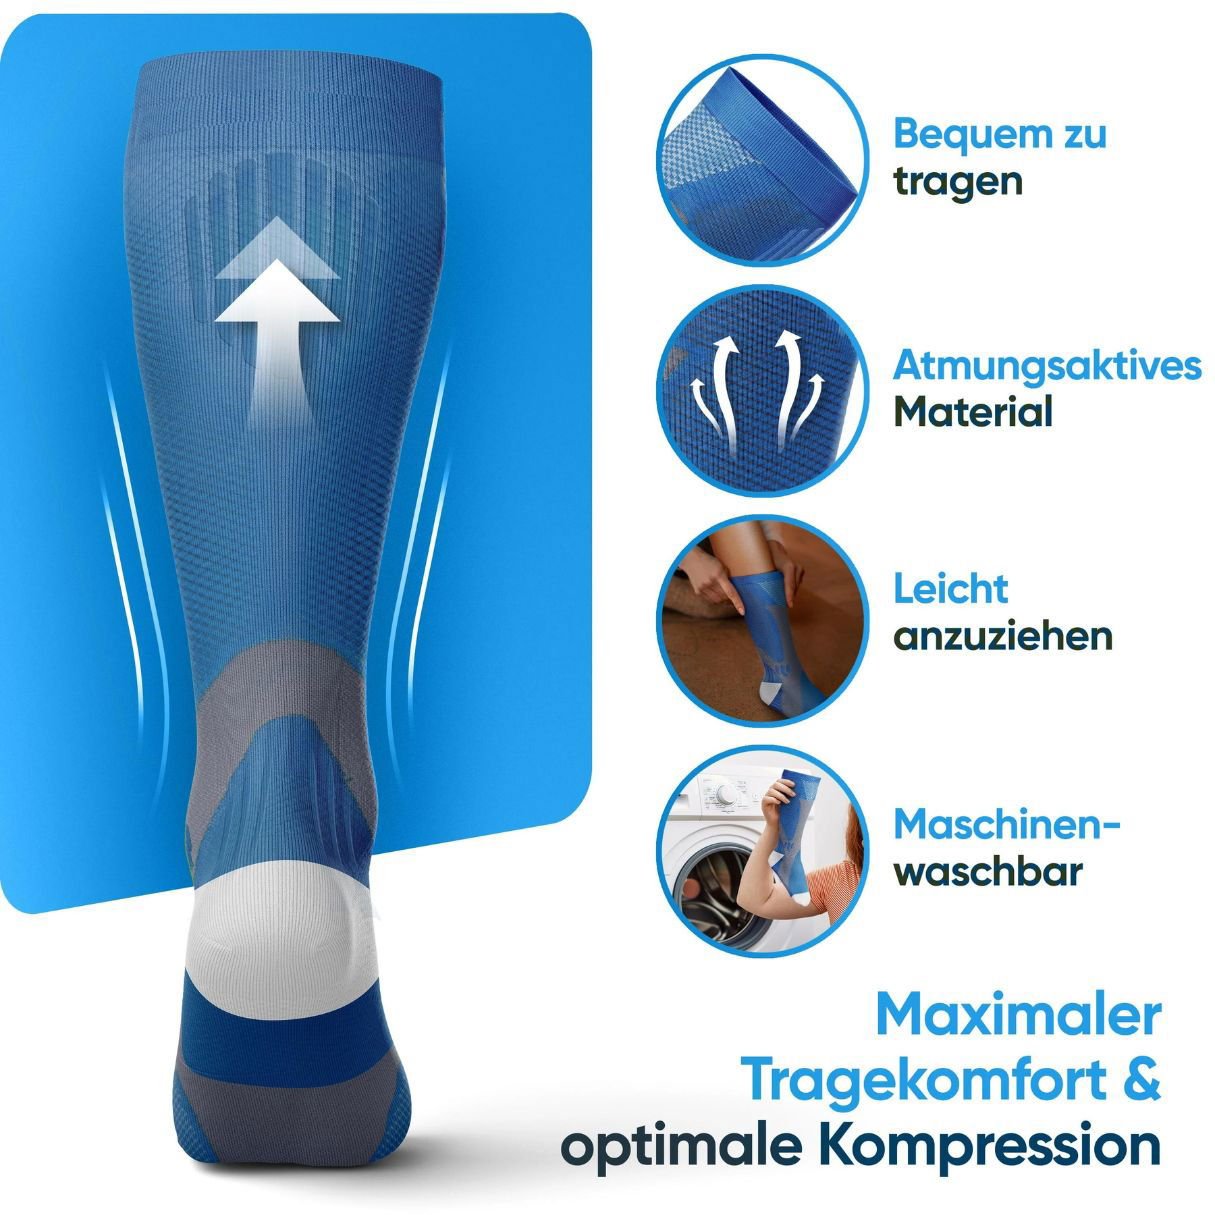 Minasa - Kompressionsstrümpfe für schmerzfreie Beine und Füße